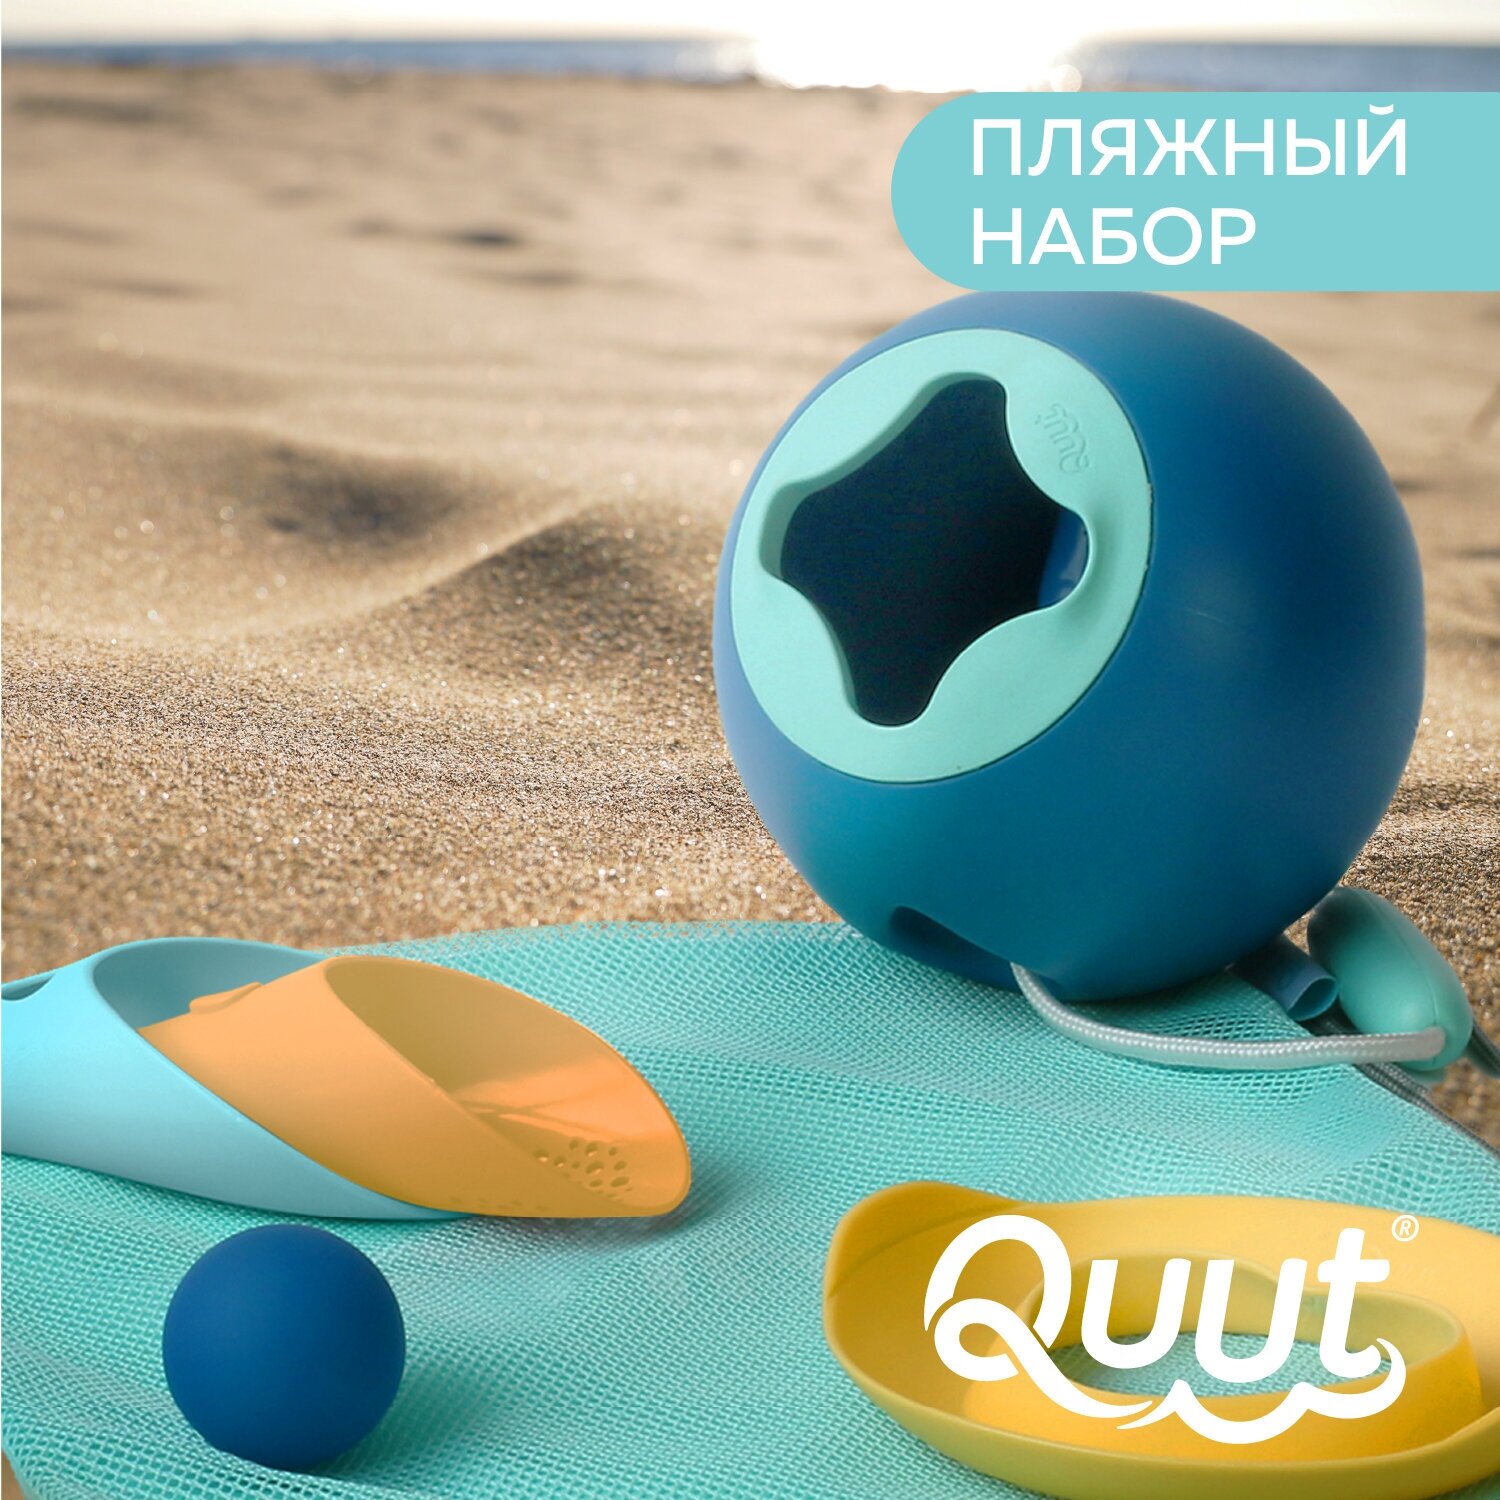 Детский игровой набор Quut Mini Ballo, Cuppi, SunnyLove для пляжа